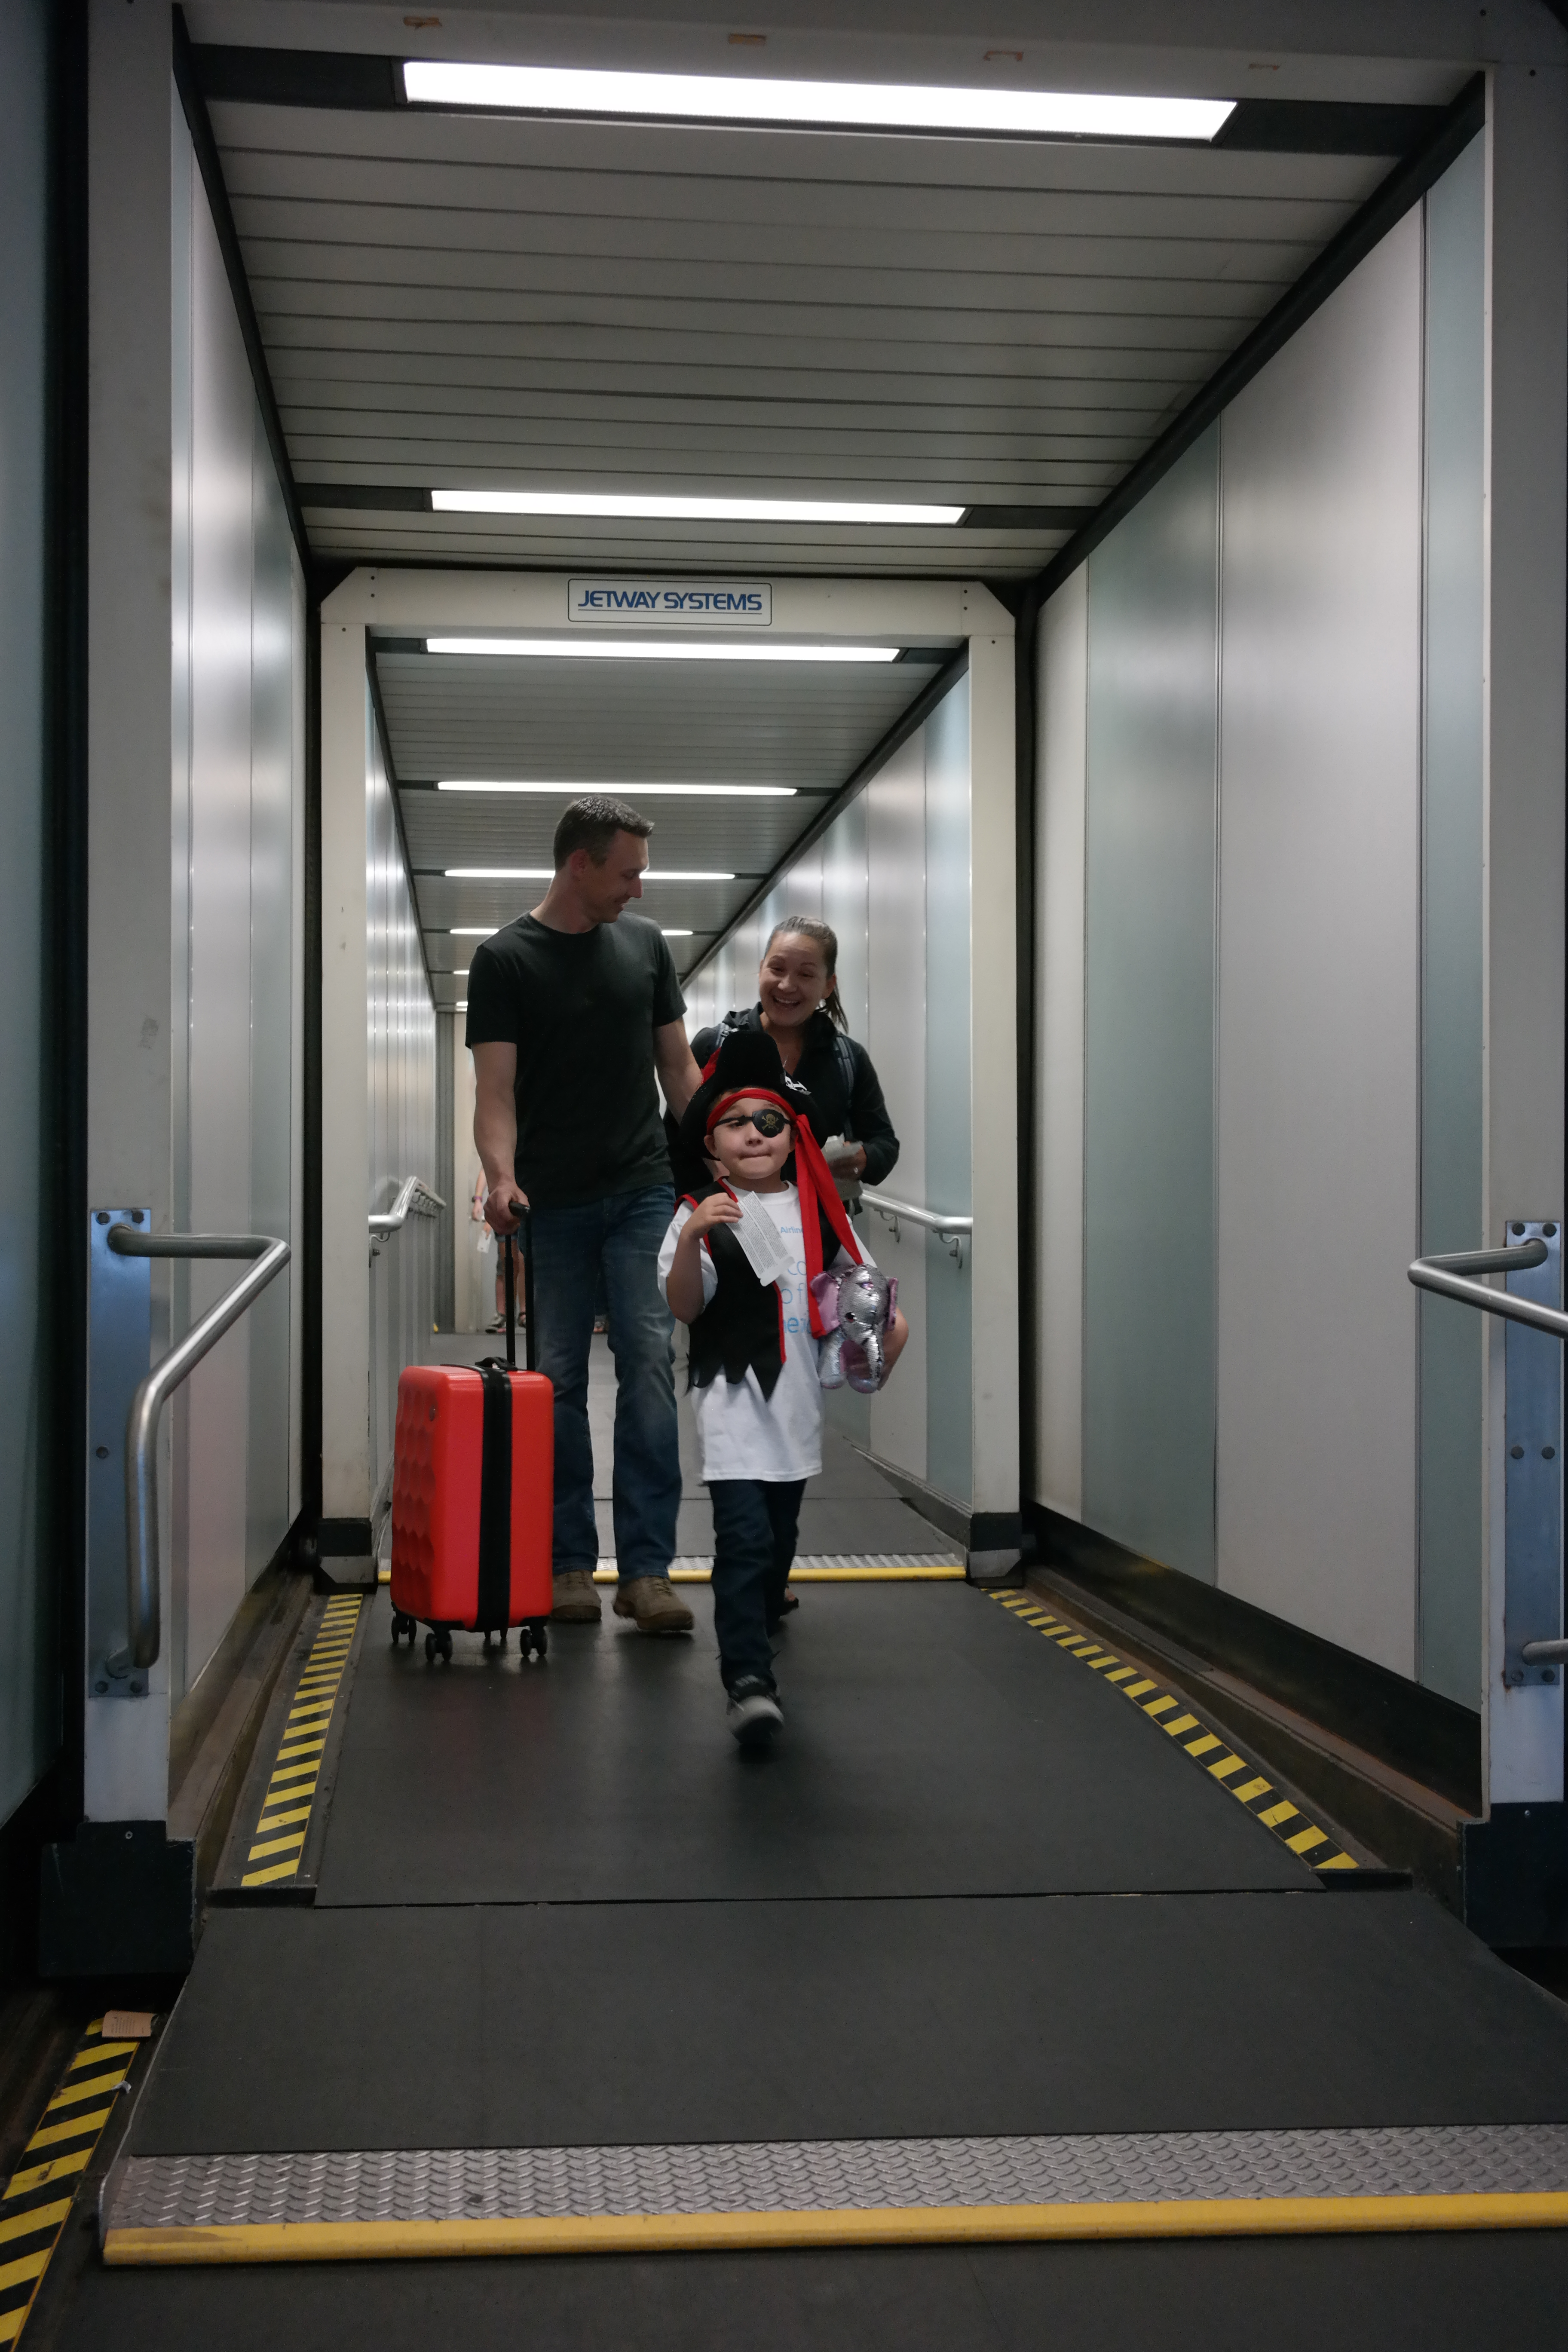 It’s Cool to Fly: el programa de American Airlines que ayuda a niños con autismo a alcanzar nuevas alturas